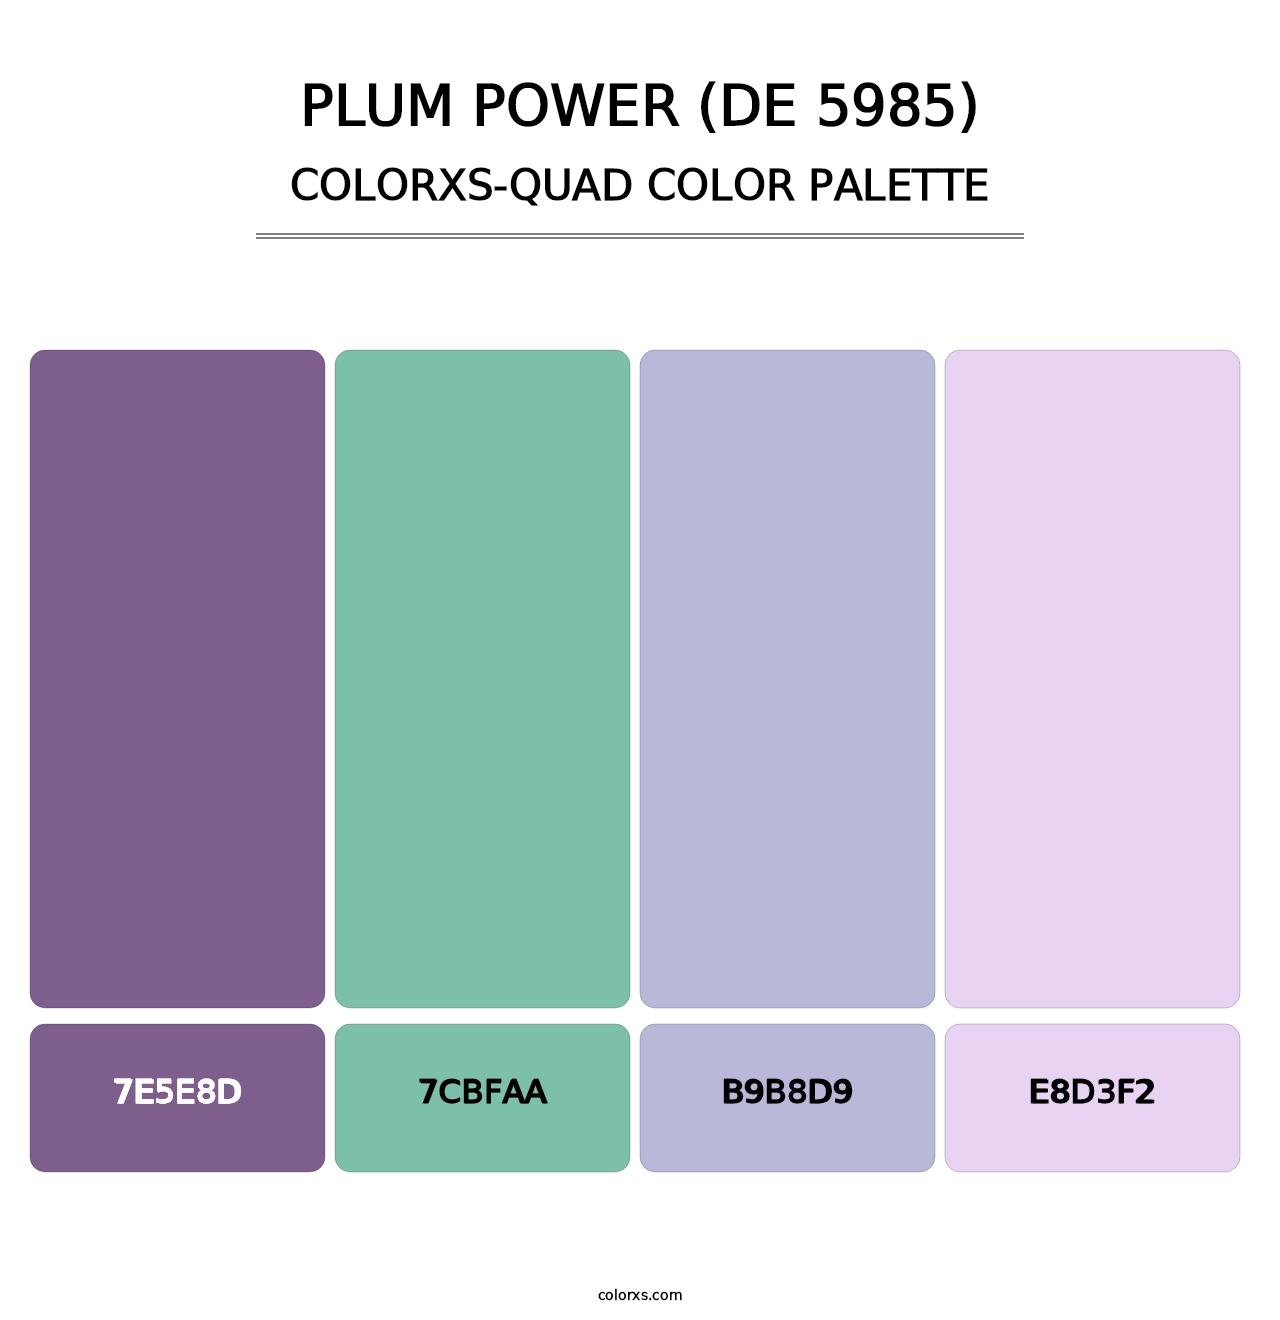 Plum Power (DE 5985) - Colorxs Quad Palette